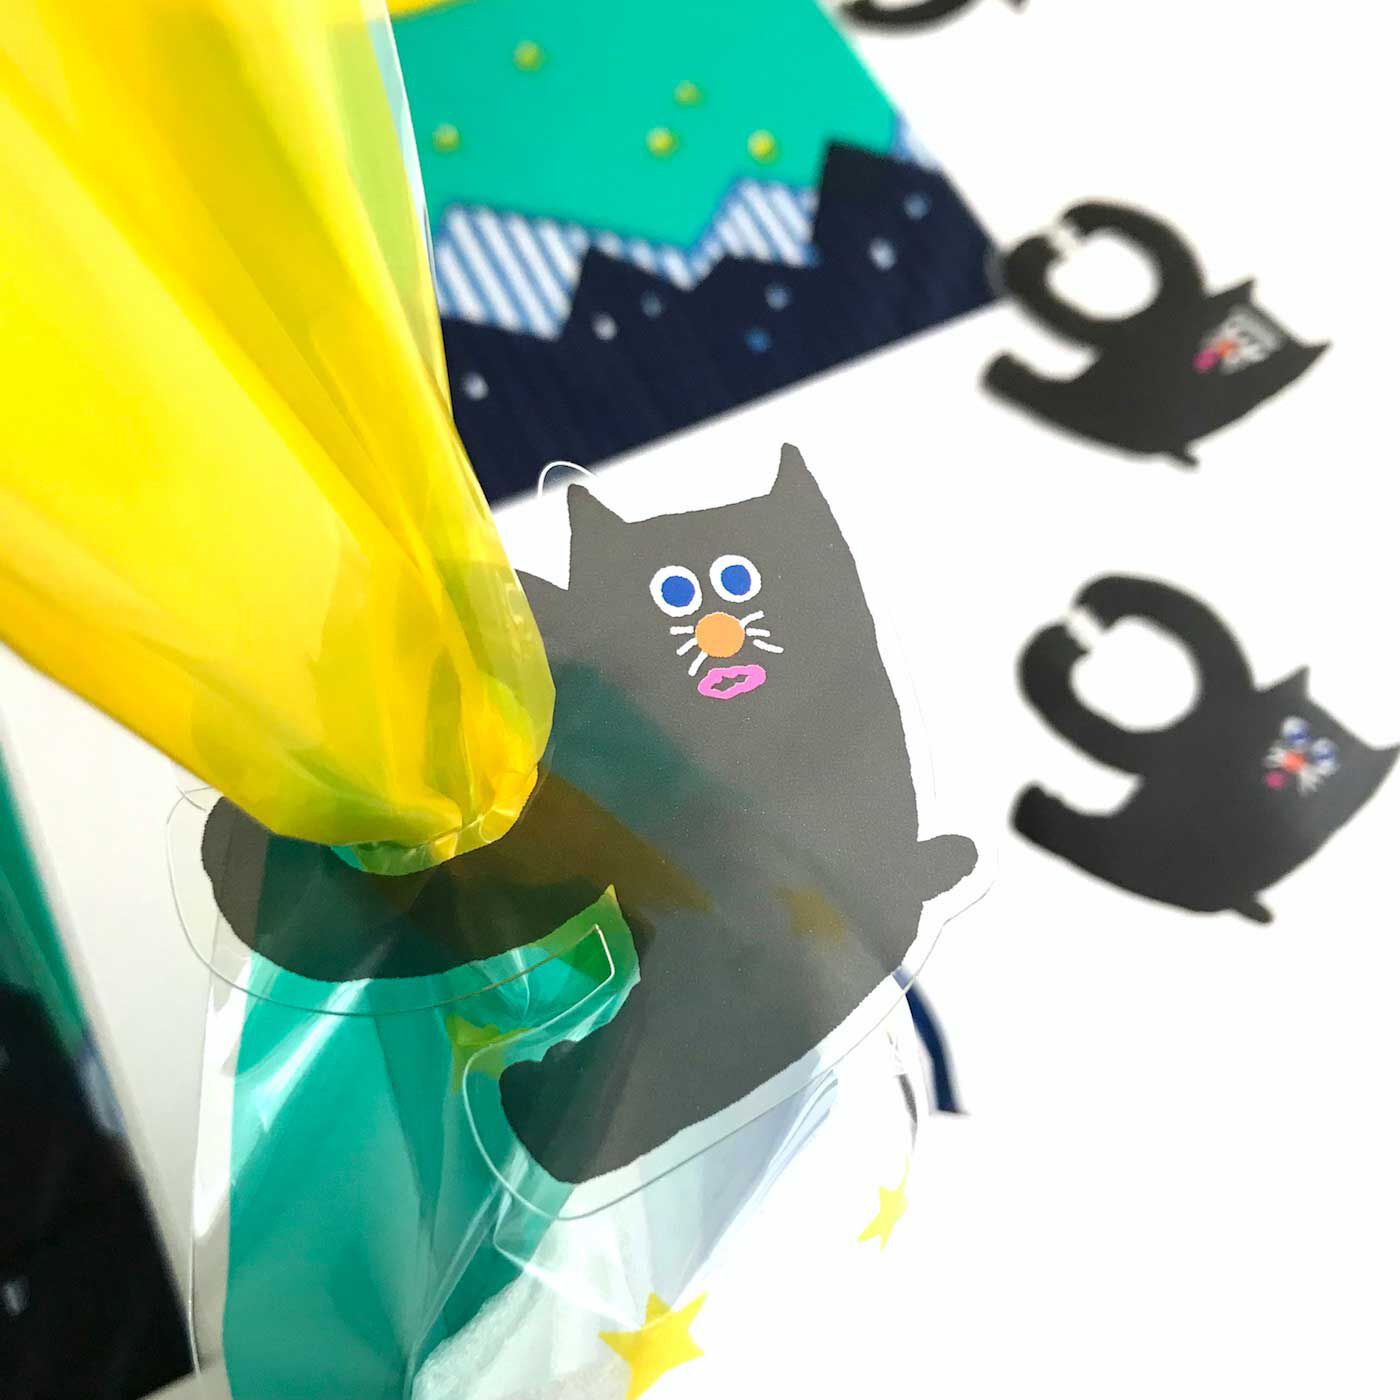 フェリシモの雑貨 Kraso|AIUEO ギフトバッグ〈S〉＆留めパーツ　3種類セット|【まよなか】袋の表と裏に描かれているのは月夜と街。それを黒猫の留めパーツで封をすると……月を捕まえた黒猫に変身。